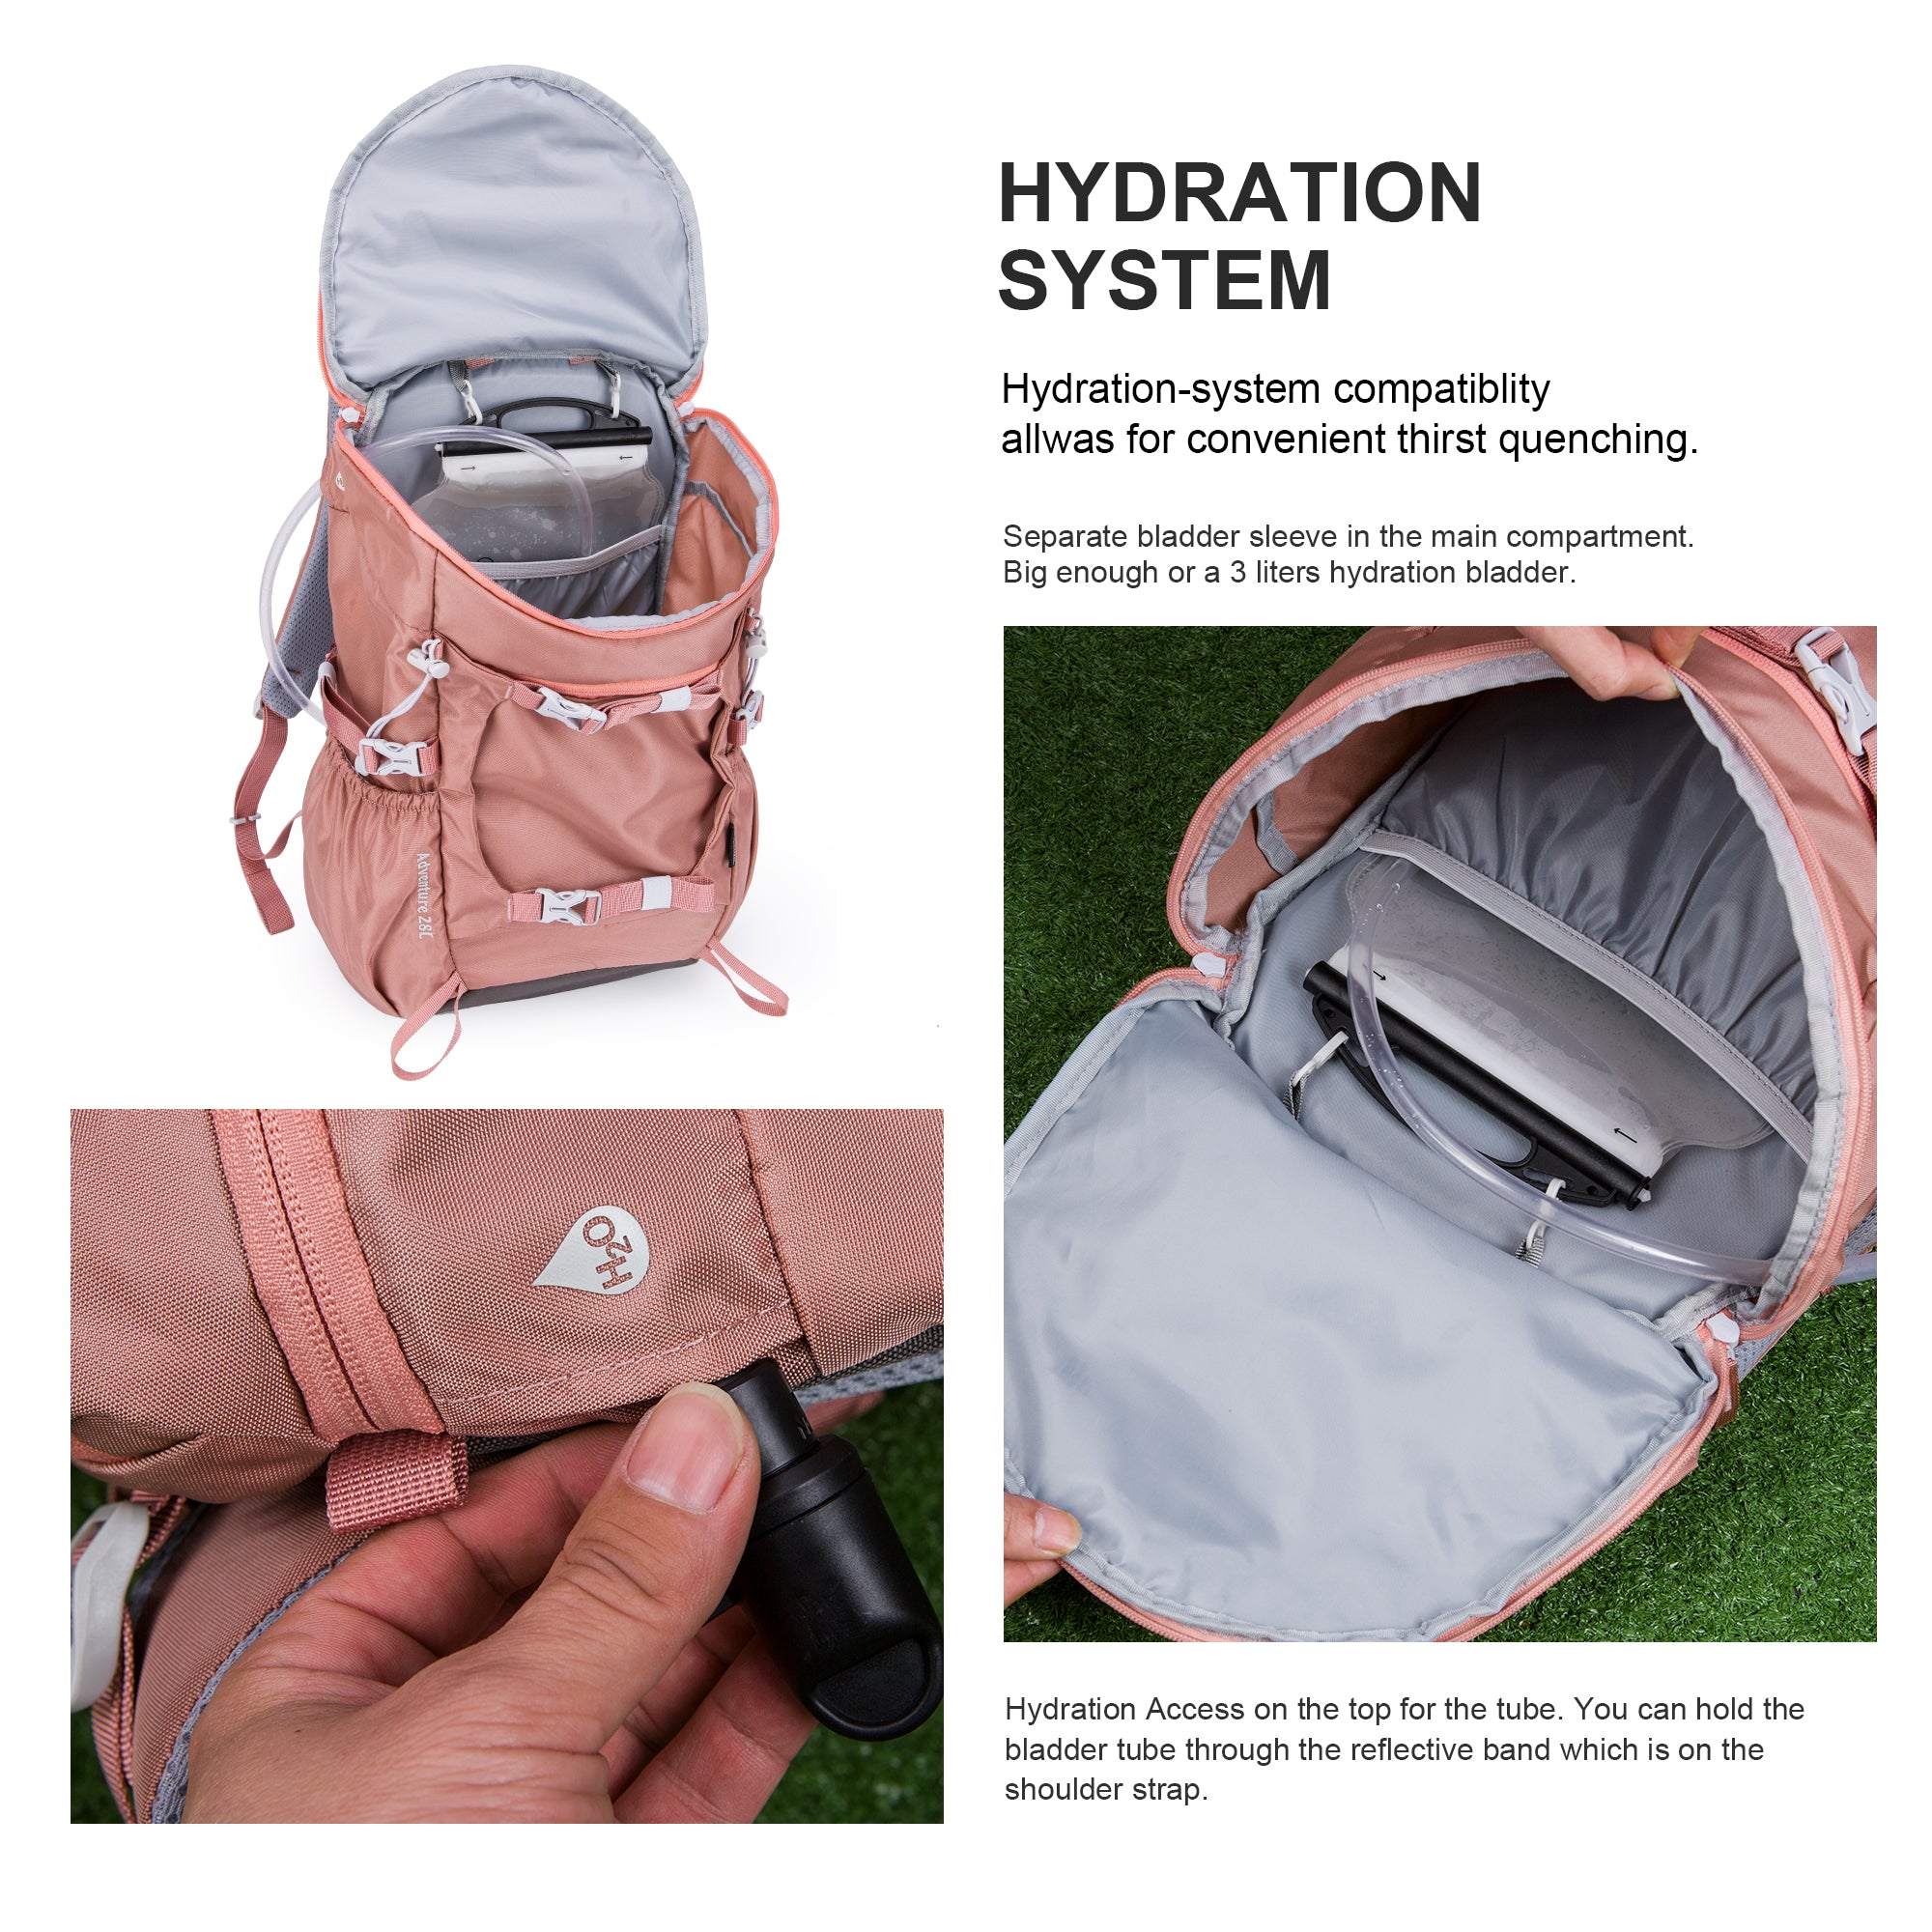 Mesh Bag Kit With Lotion | EverythingBranded USA